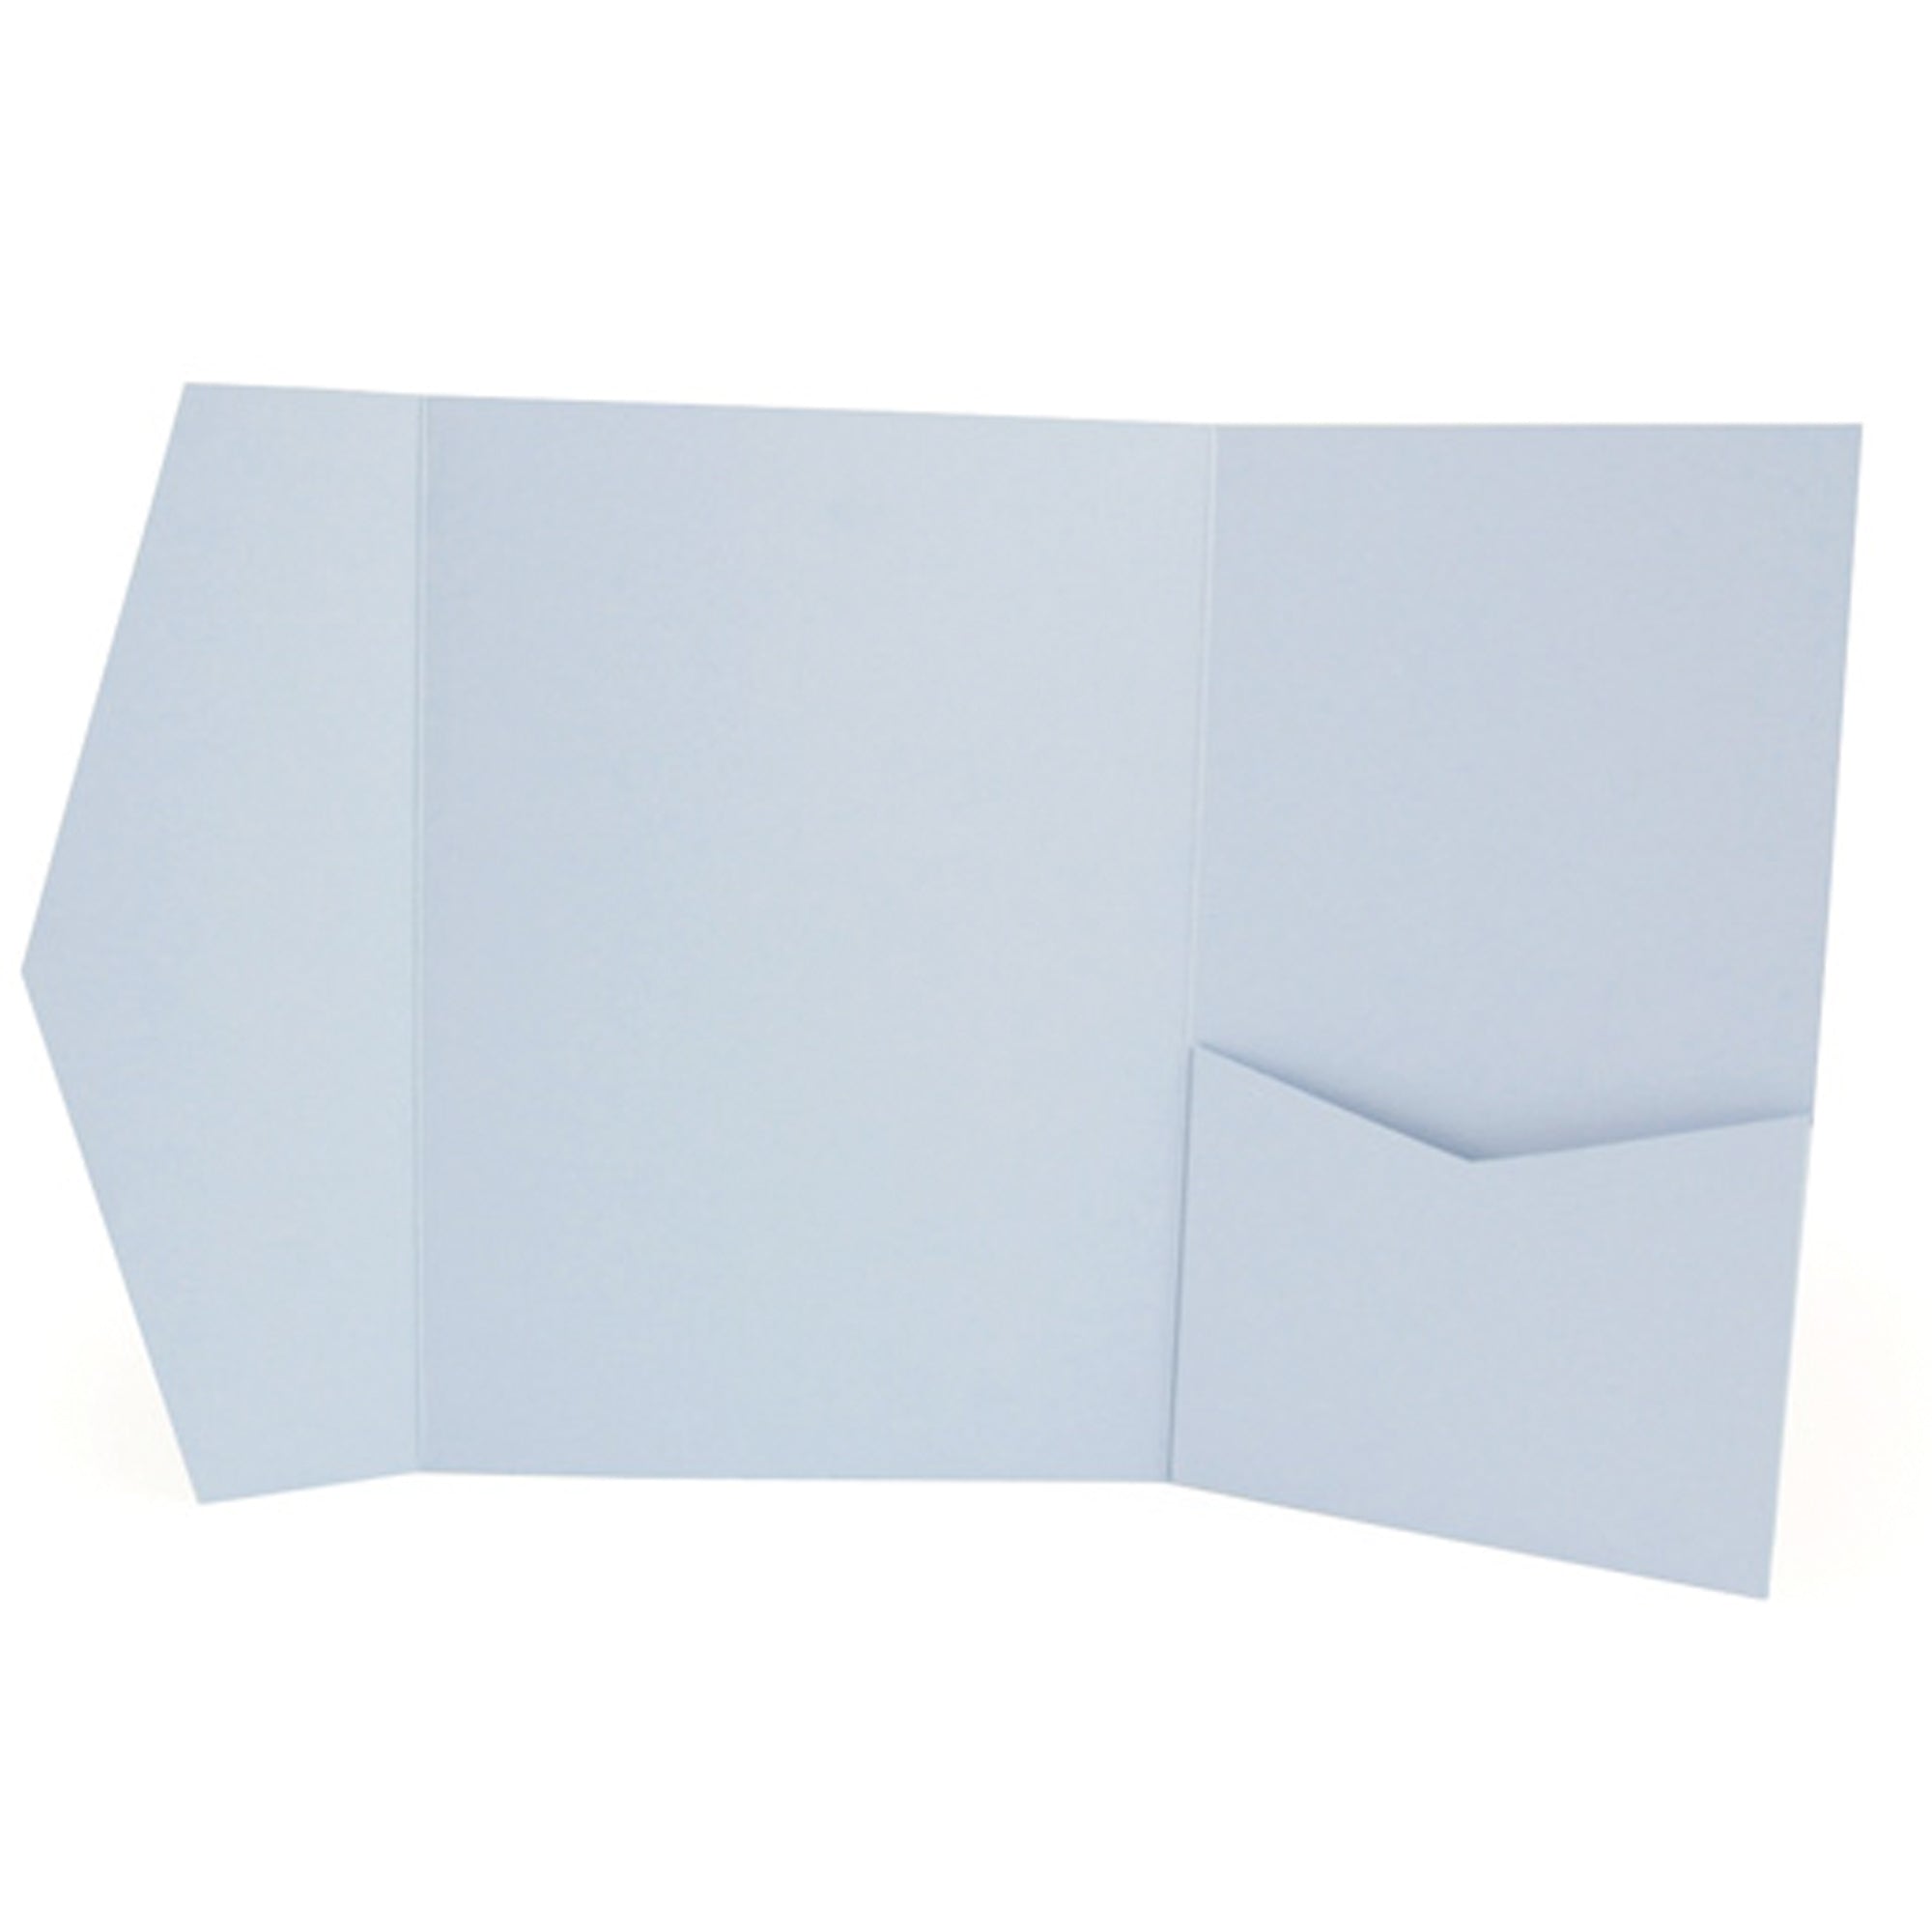 Pocket envelope sunset blue #168